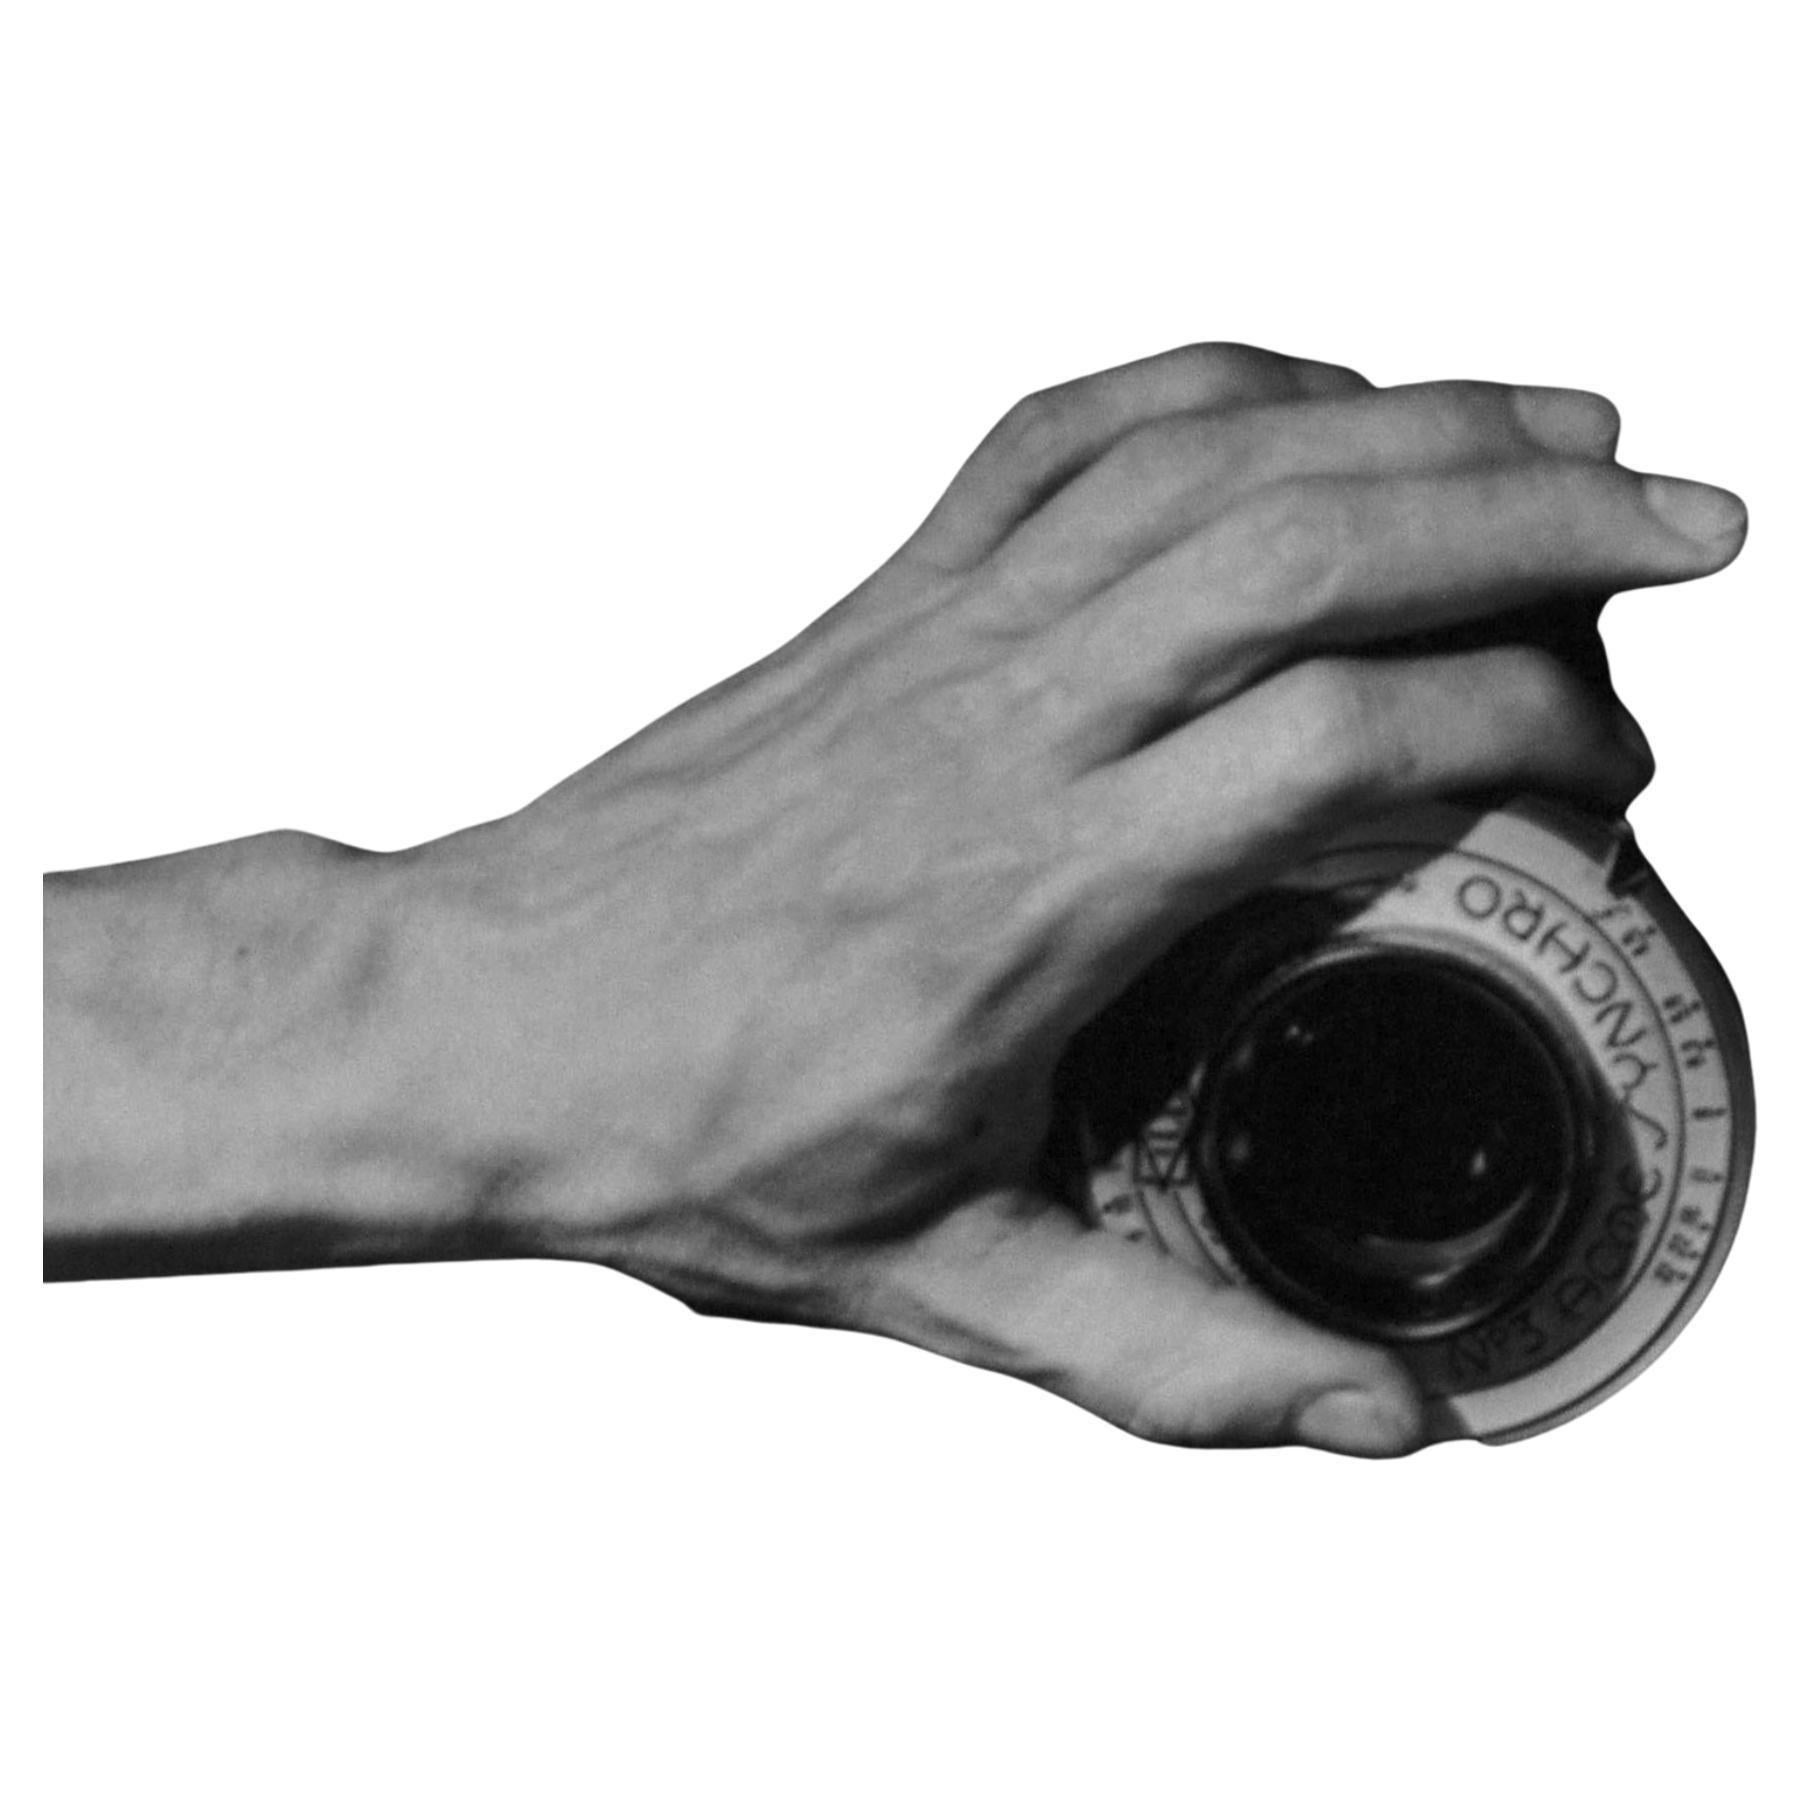 Hand an der Kamera, Mexiko. Figurative Schwarz-Weiß-Fotografie. Gerahmt – Photograph von Leo Matiz